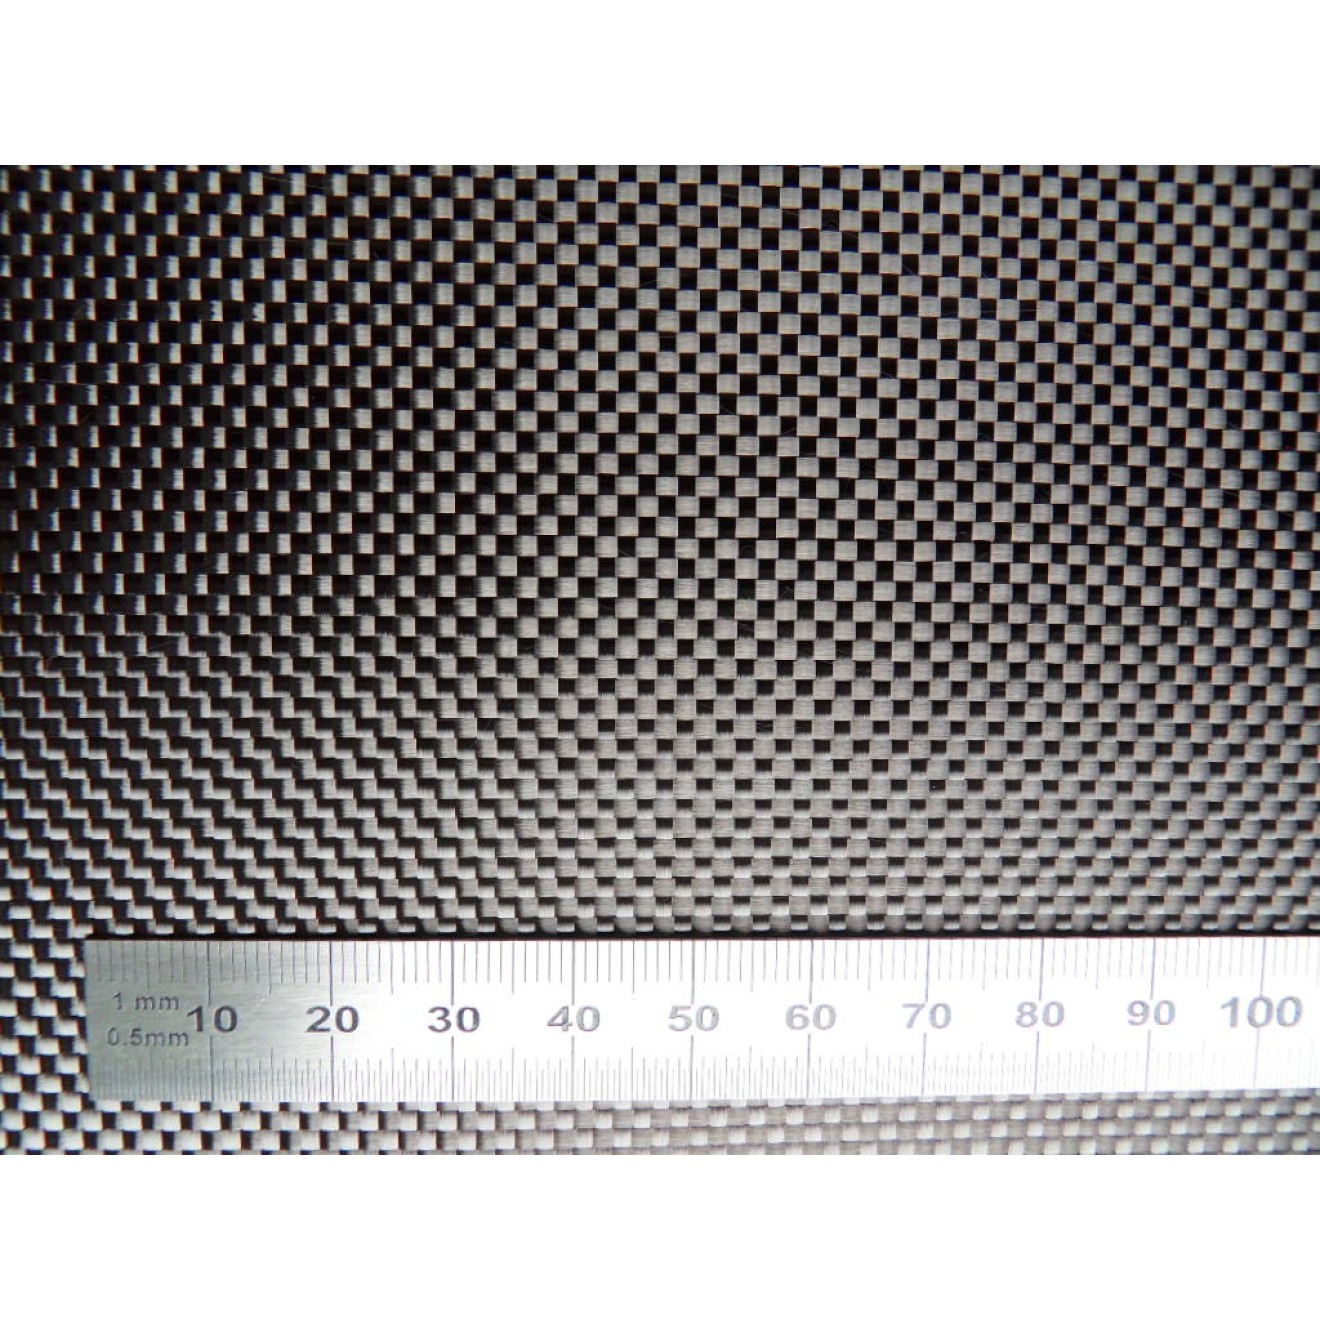 Woven carbon fiber fabric 3K 245g/m² plain weave, width 120cm, roll length 100m